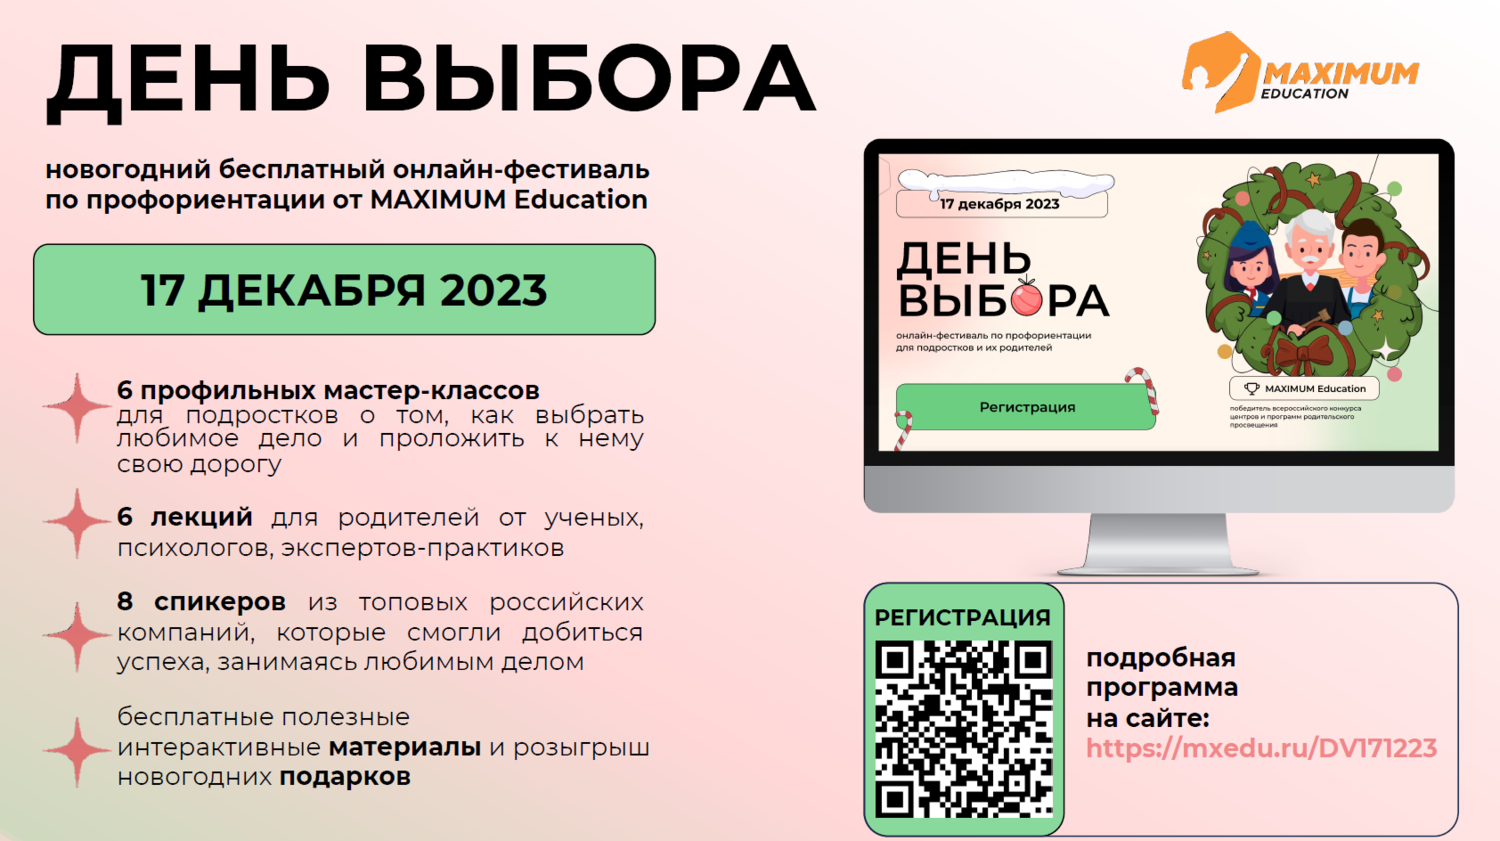 Всероссийский онлайн-фестиваль по профориентации &amp;quot;День выбора&amp;quot;.